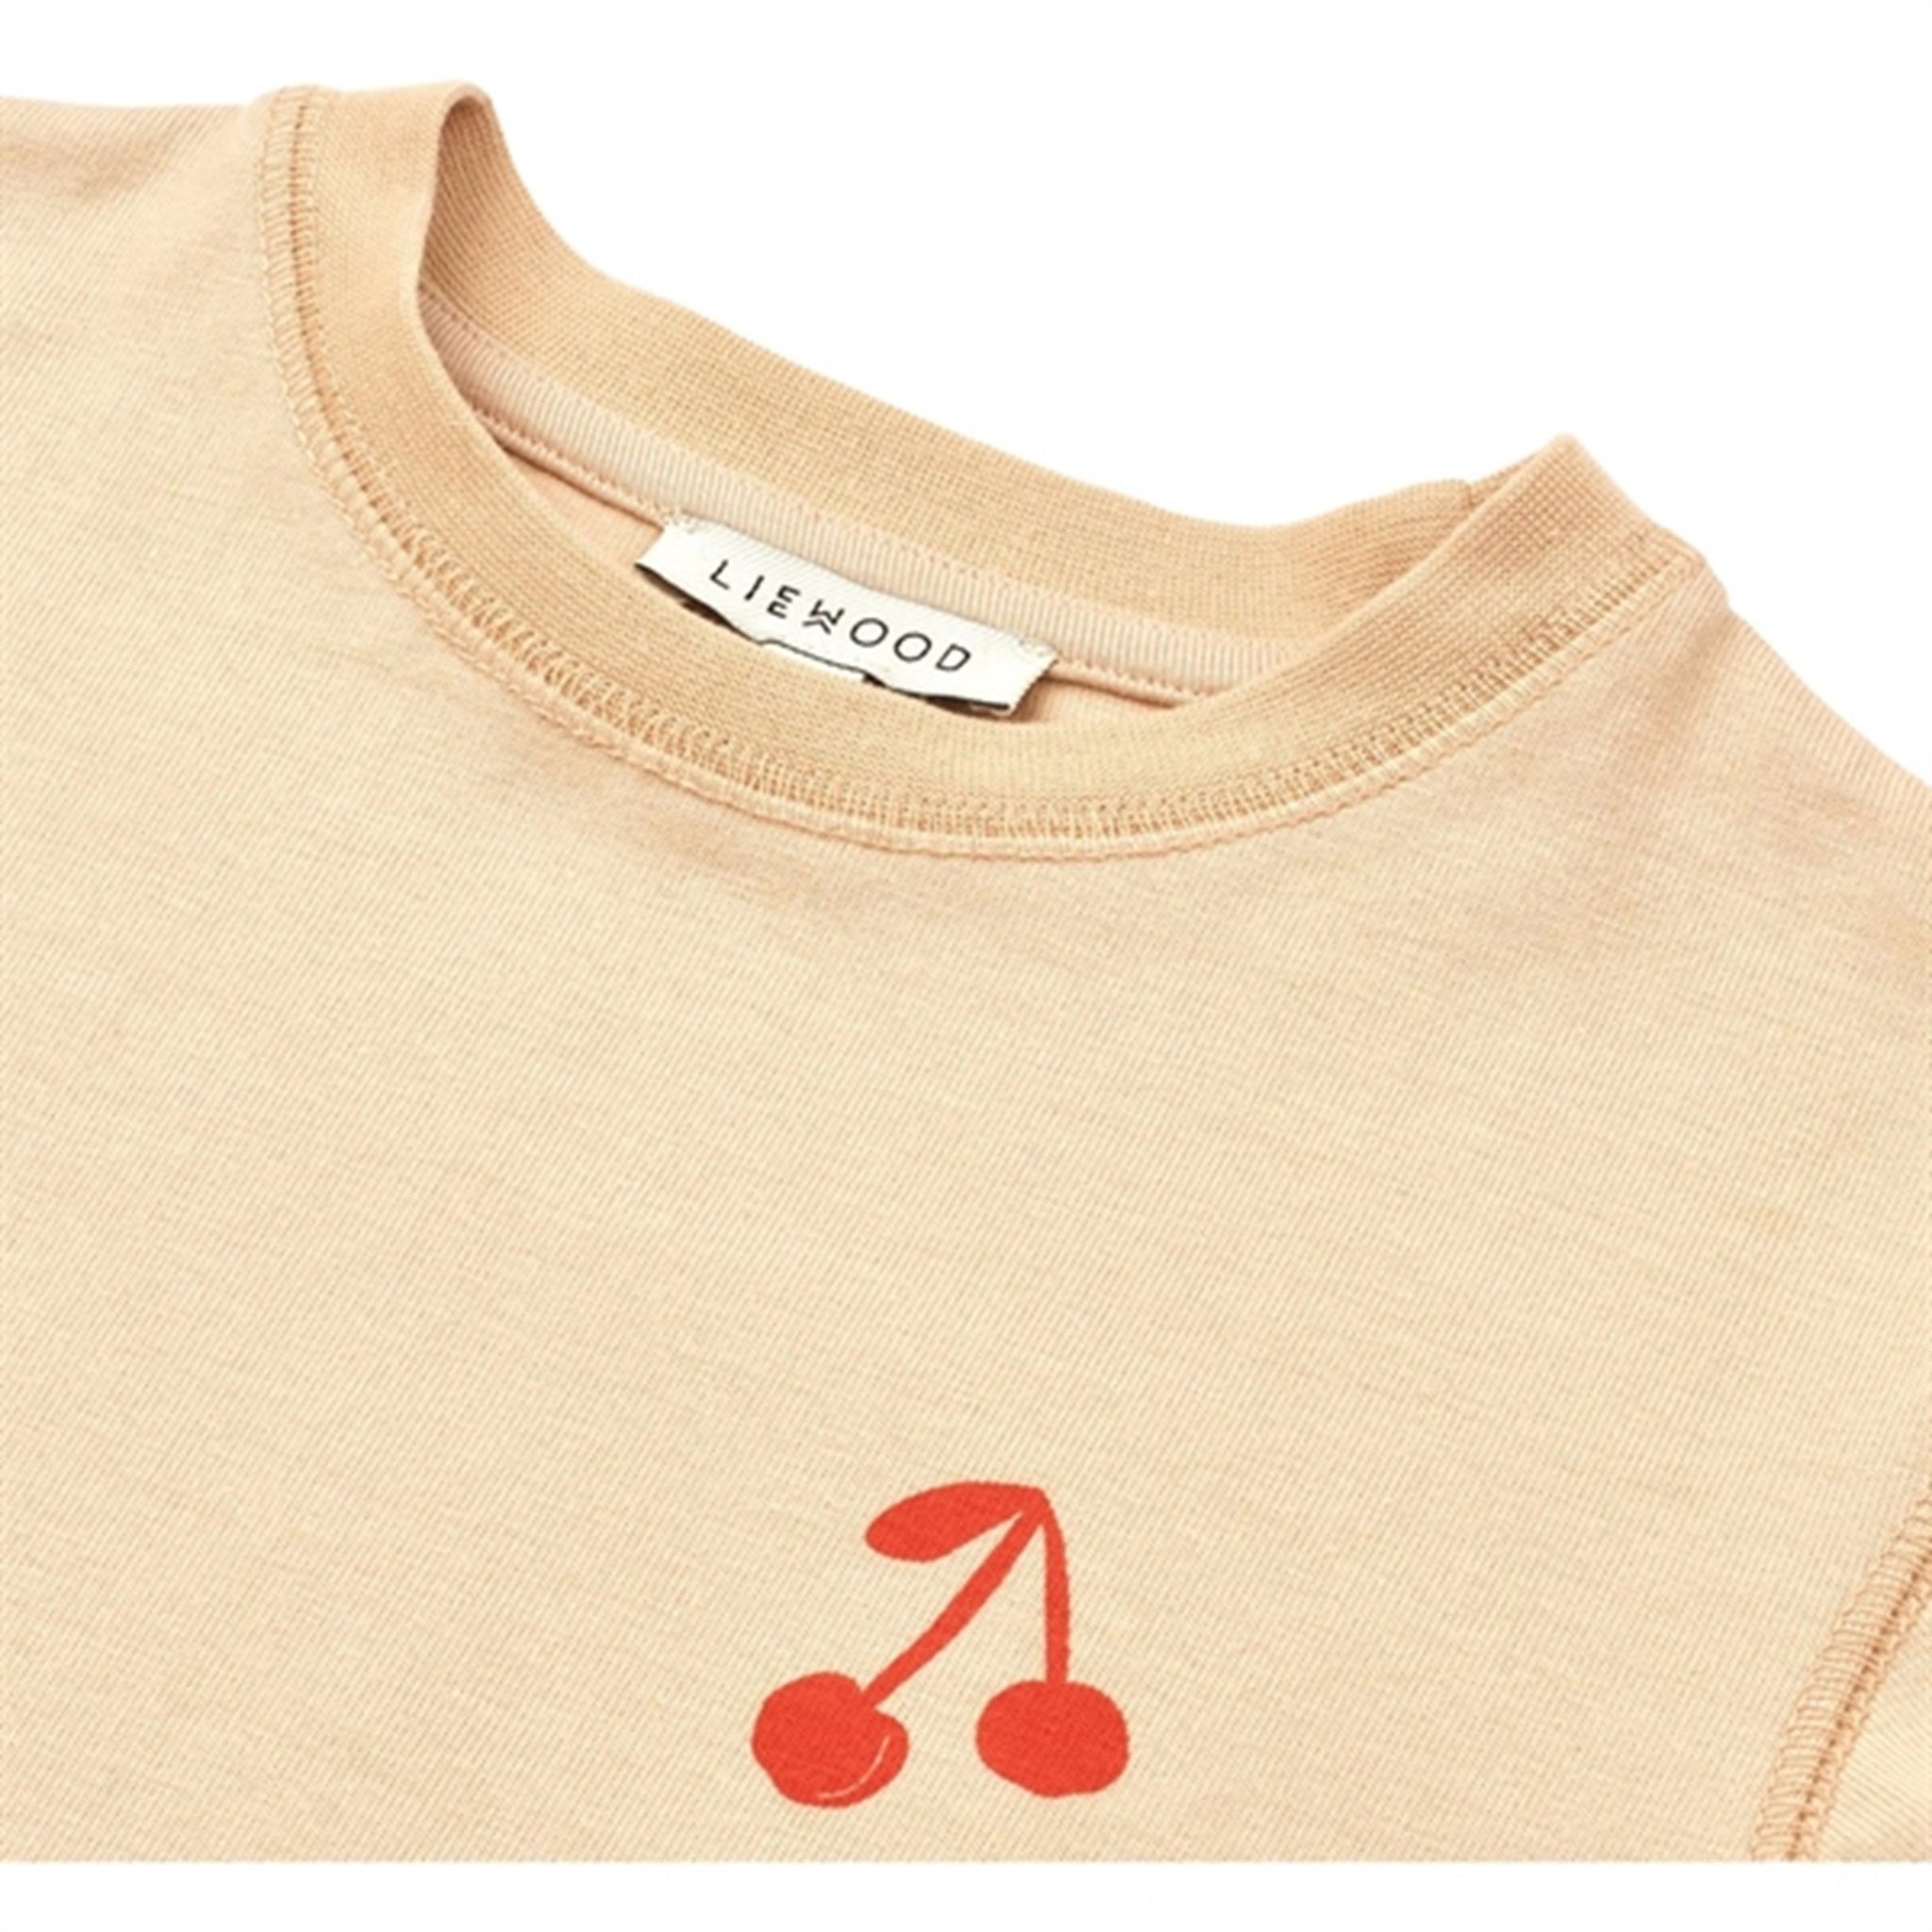 Liewood Cherries/Apple Blossom Sixten Placement T-shirt 3